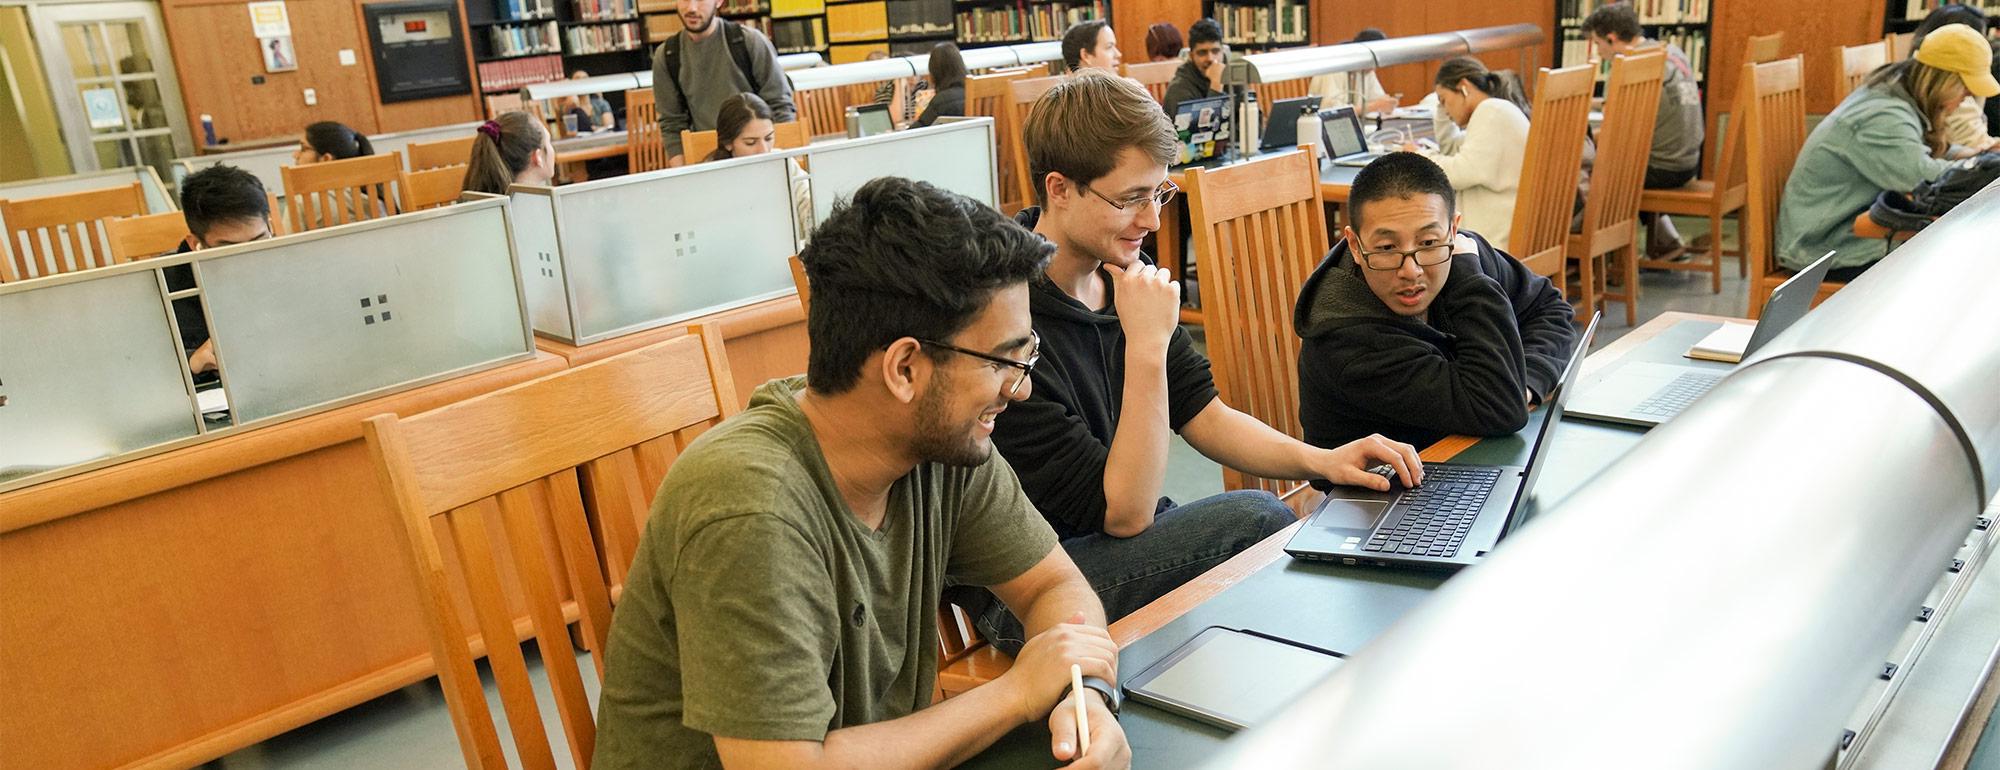 三个学生在希尔兹图书馆一起做项目.